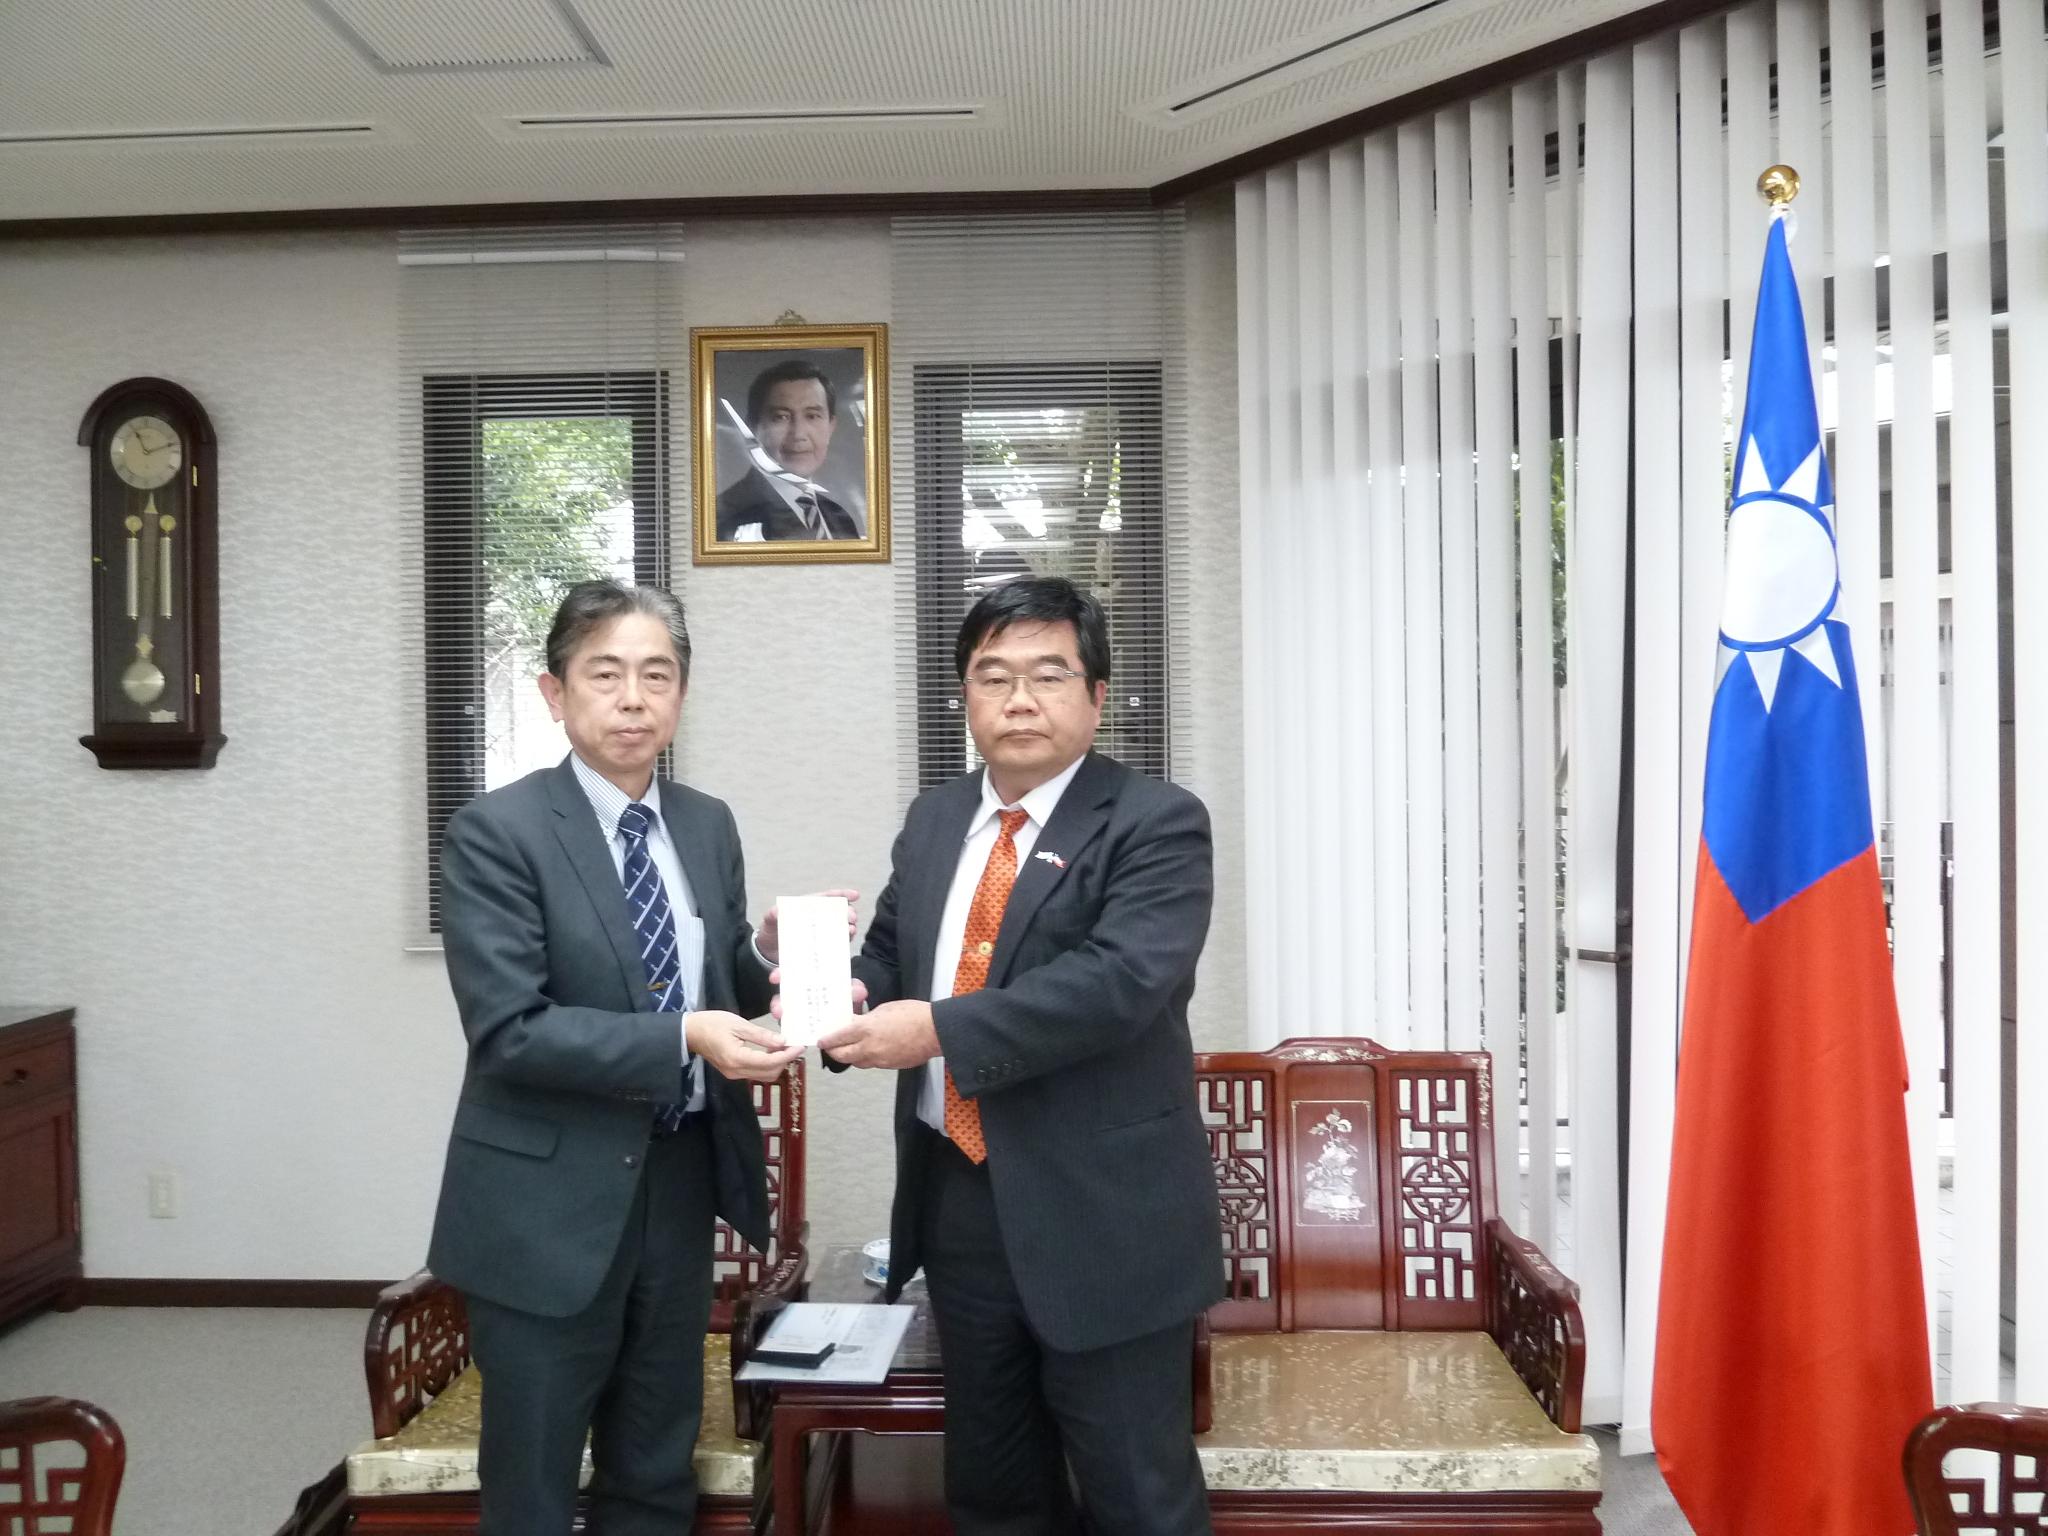 3/1株式会社正興電機製作所德島主計総務部長が台湾南部大震災賑災金を提供した。